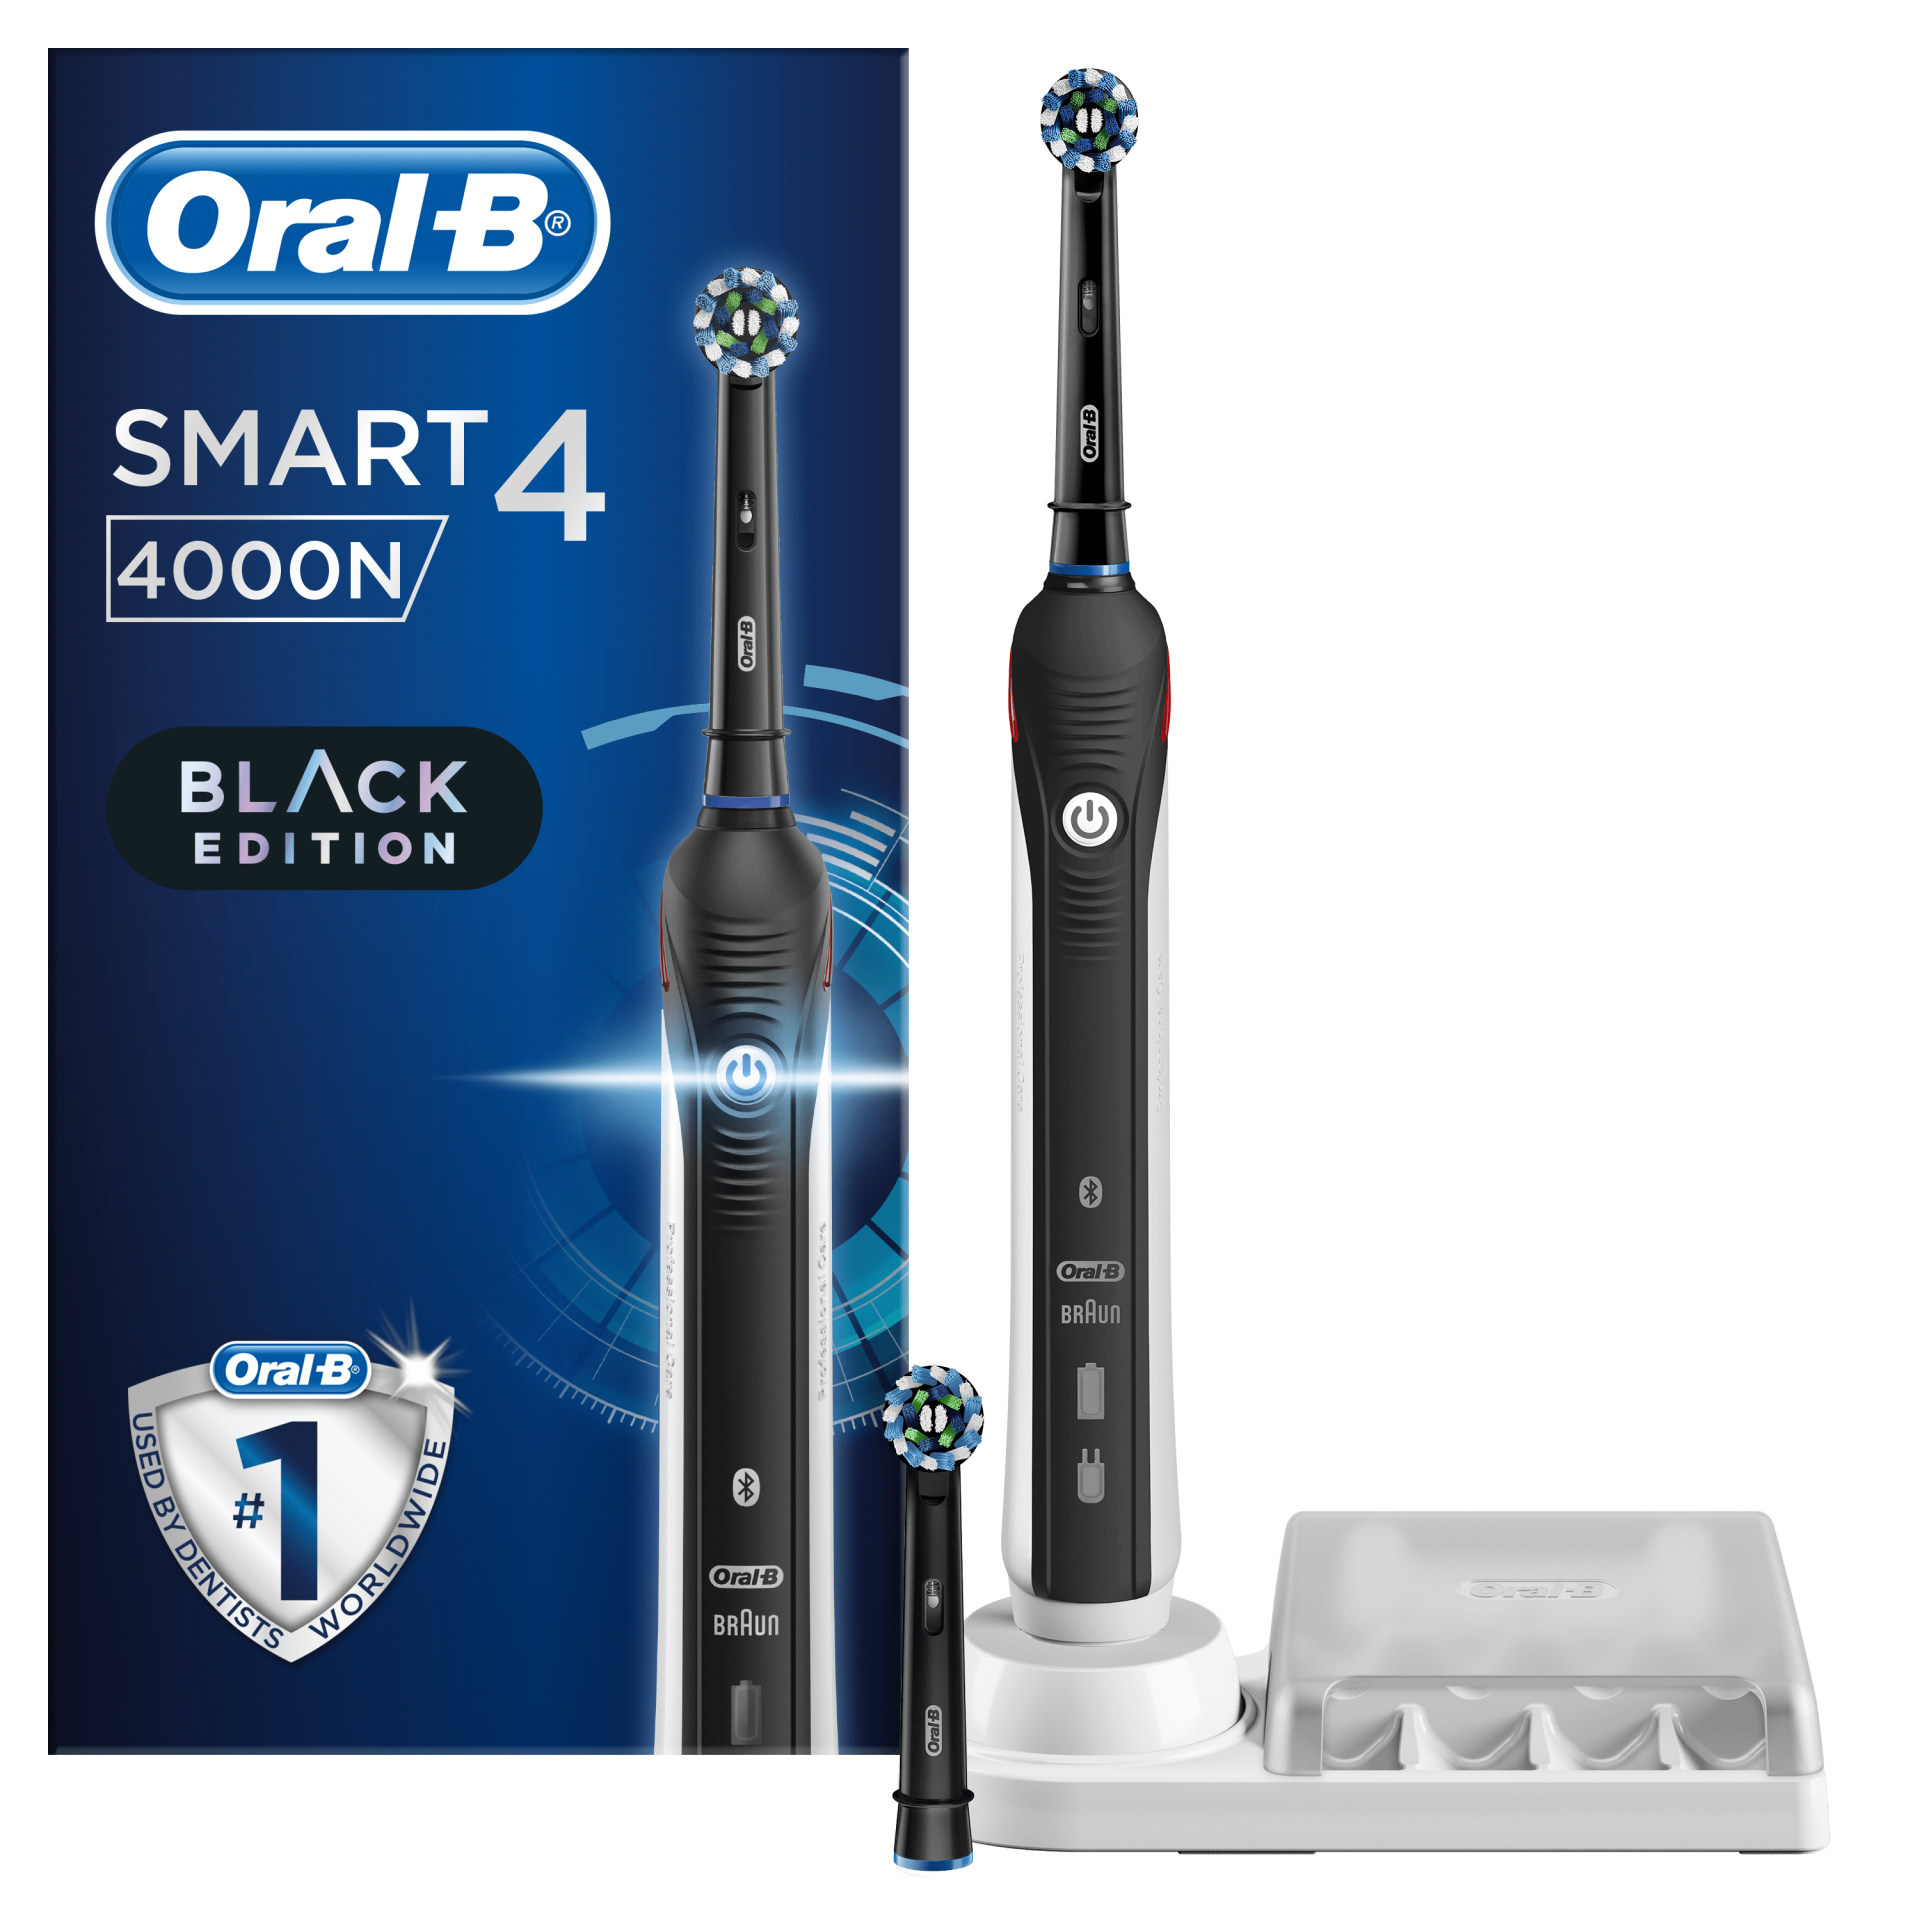 Meglio spazzolino elettrico o manuale? - Smart Dental Clinic